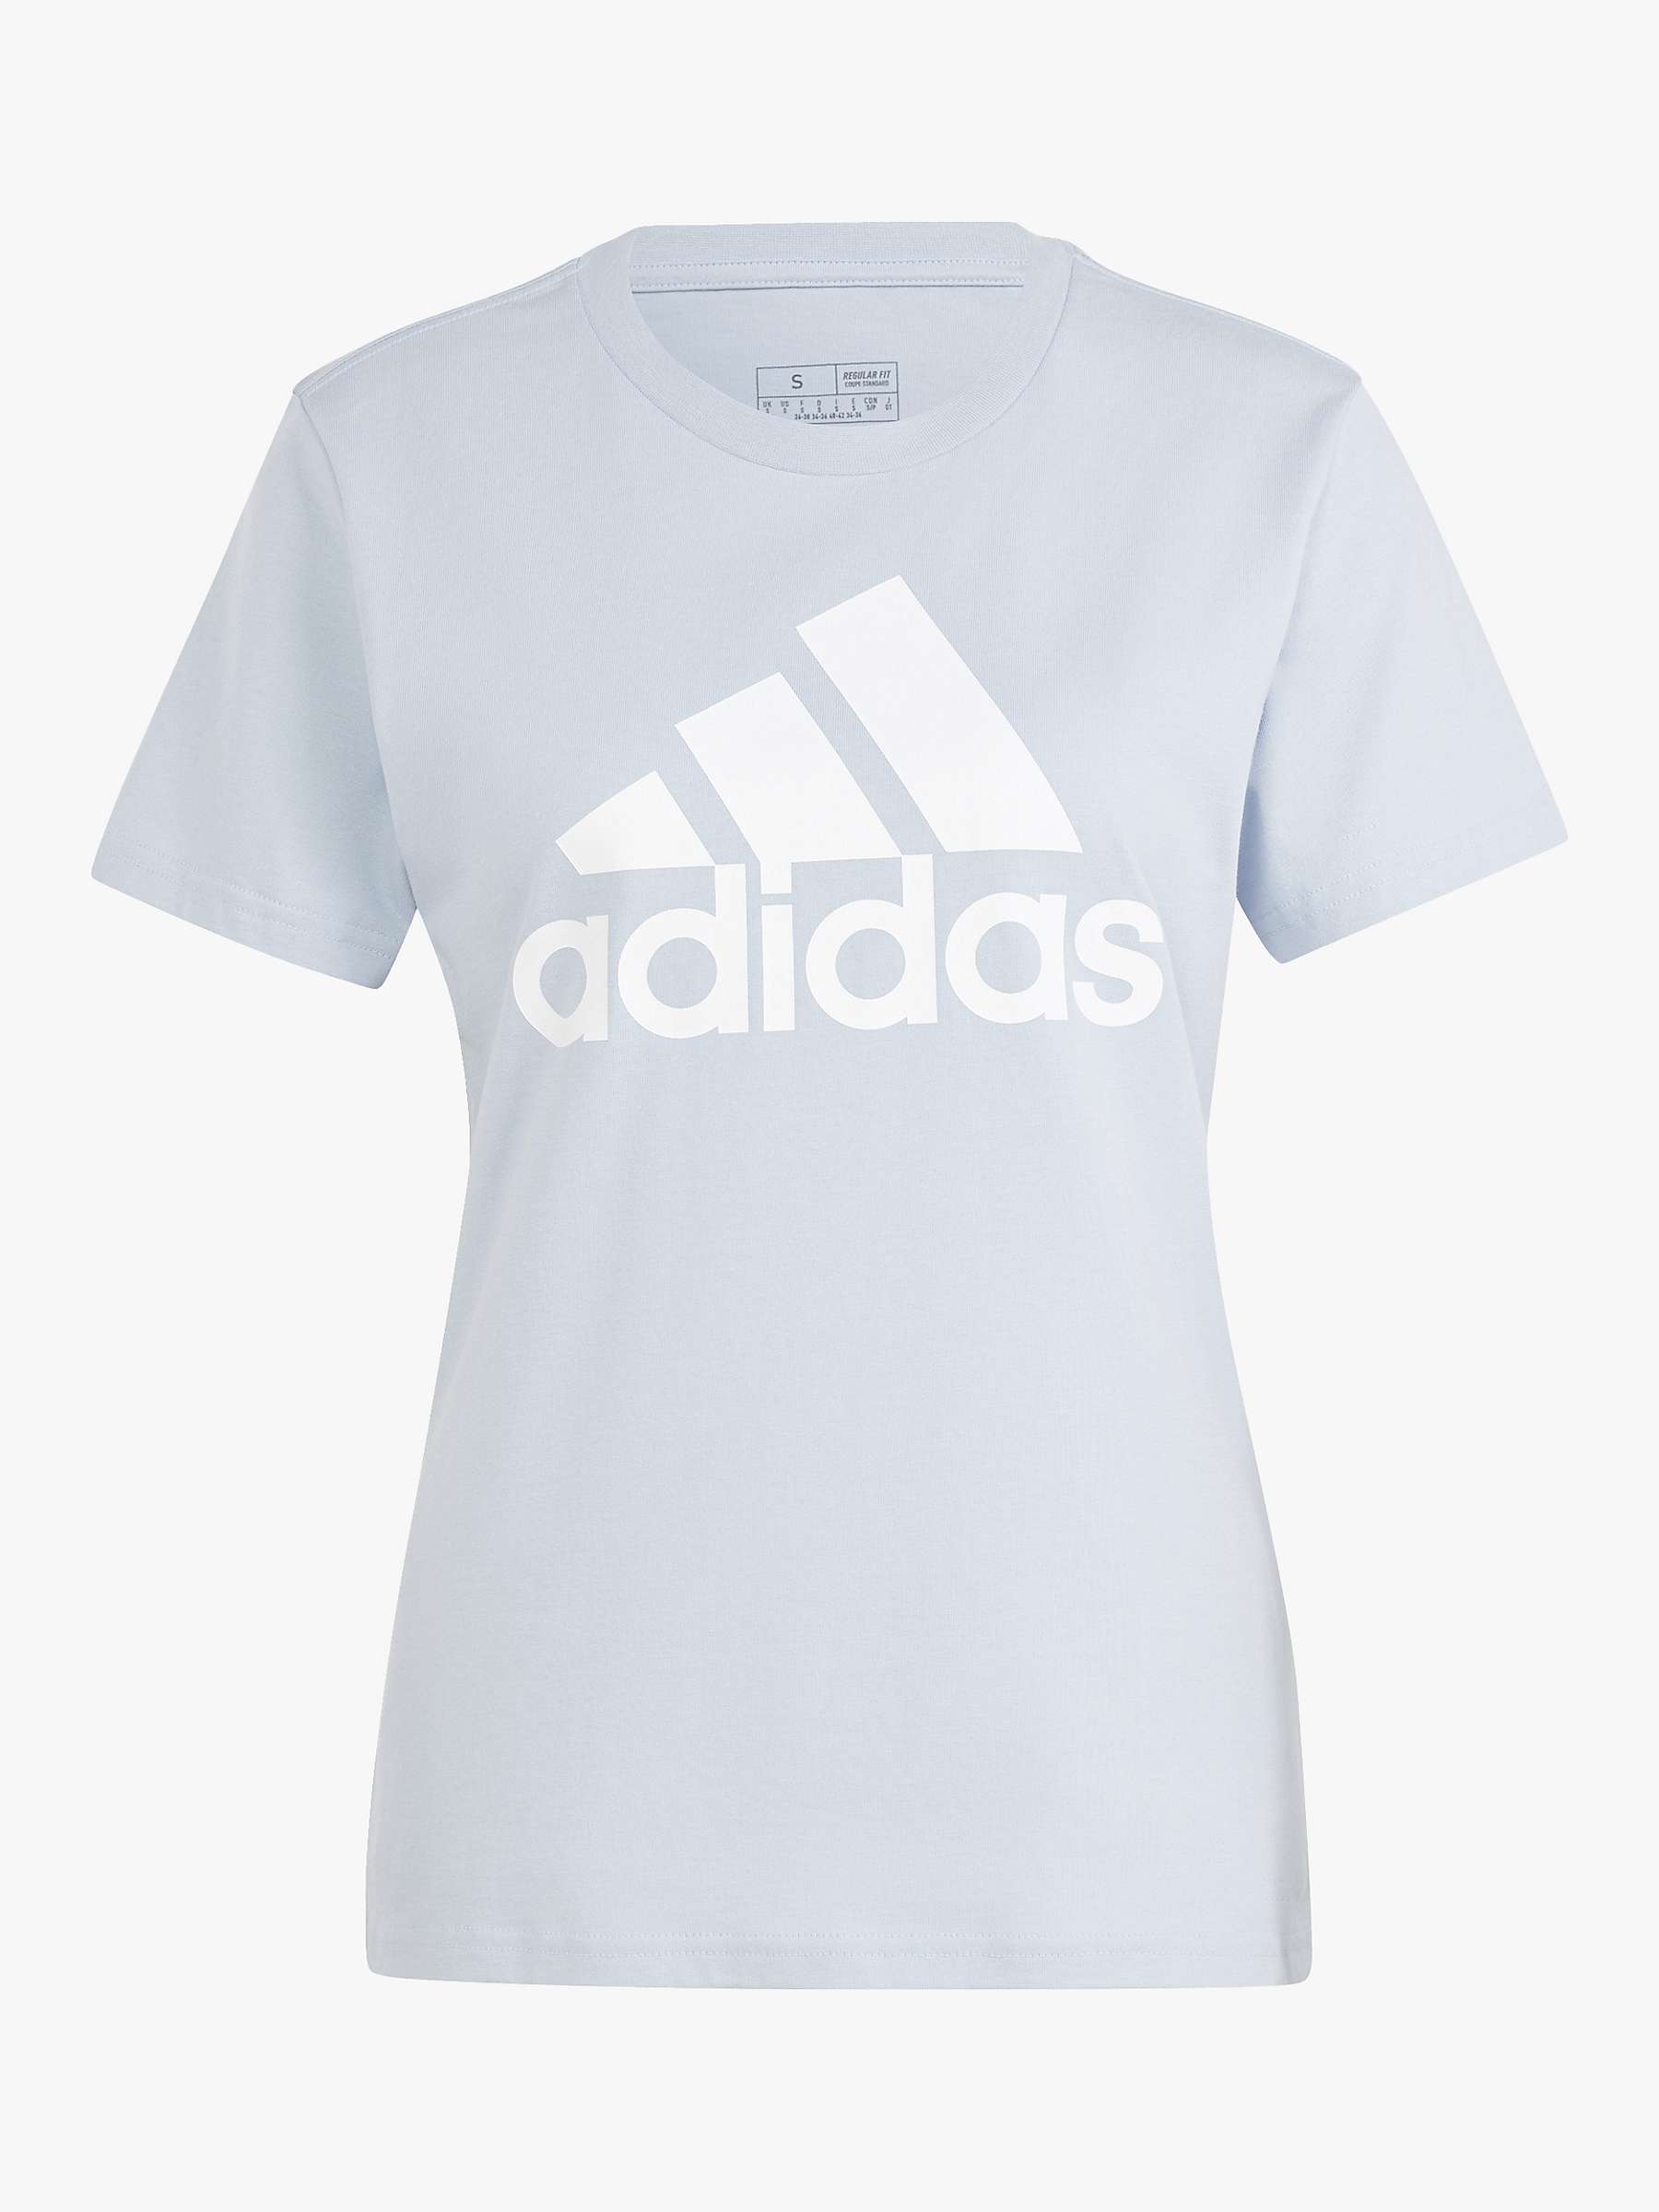 Buy adidas Women's Essentials Logo Short Sleeve T-Shirt, Light Blue Online at johnlewis.com